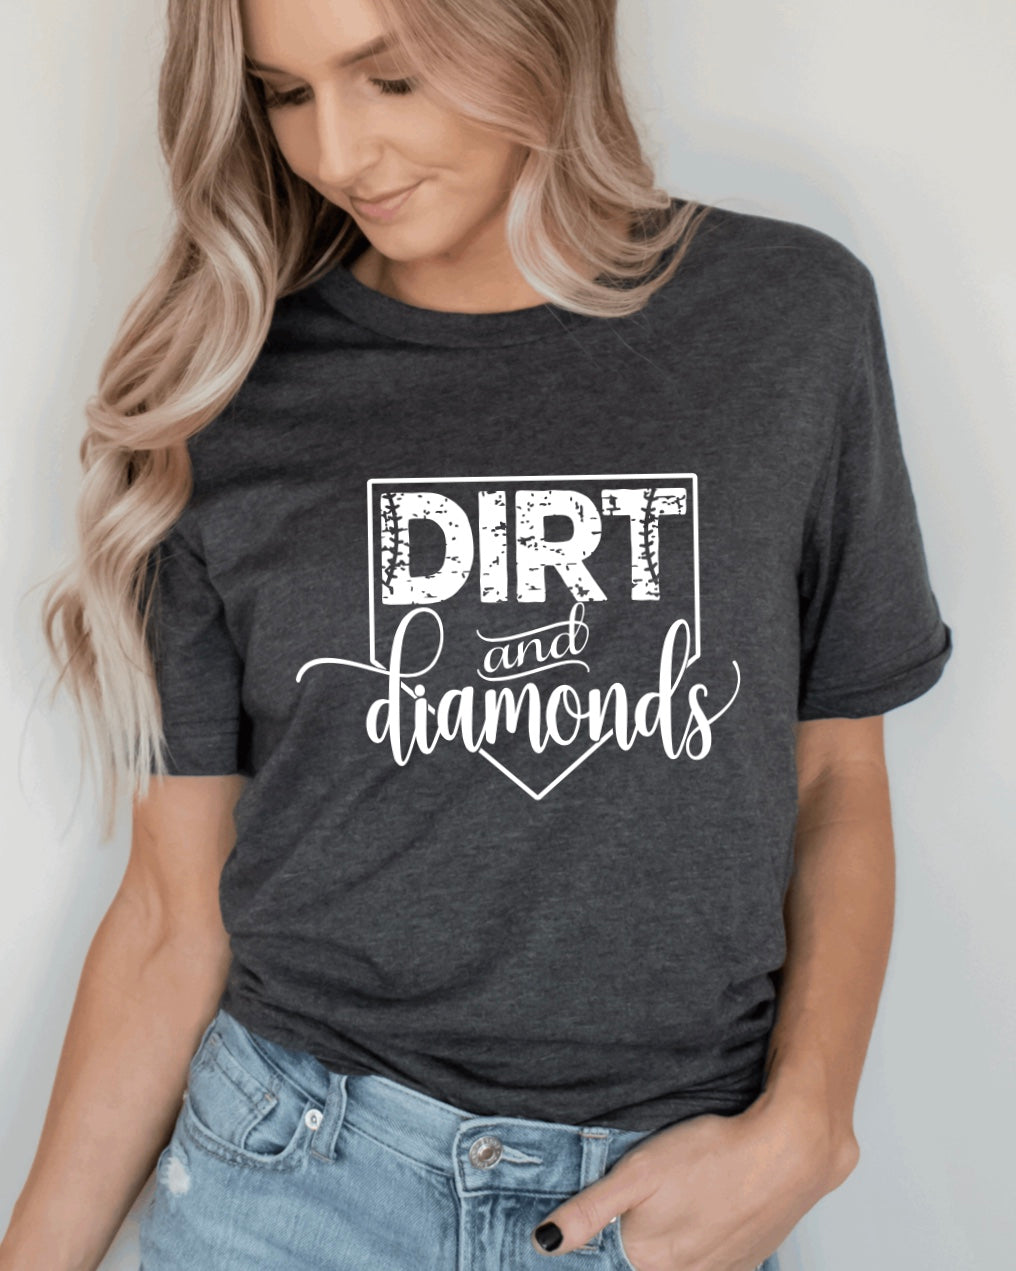 I'm a Dirt and Diamonds kind of Mom - Baseball - Softball - Shirt